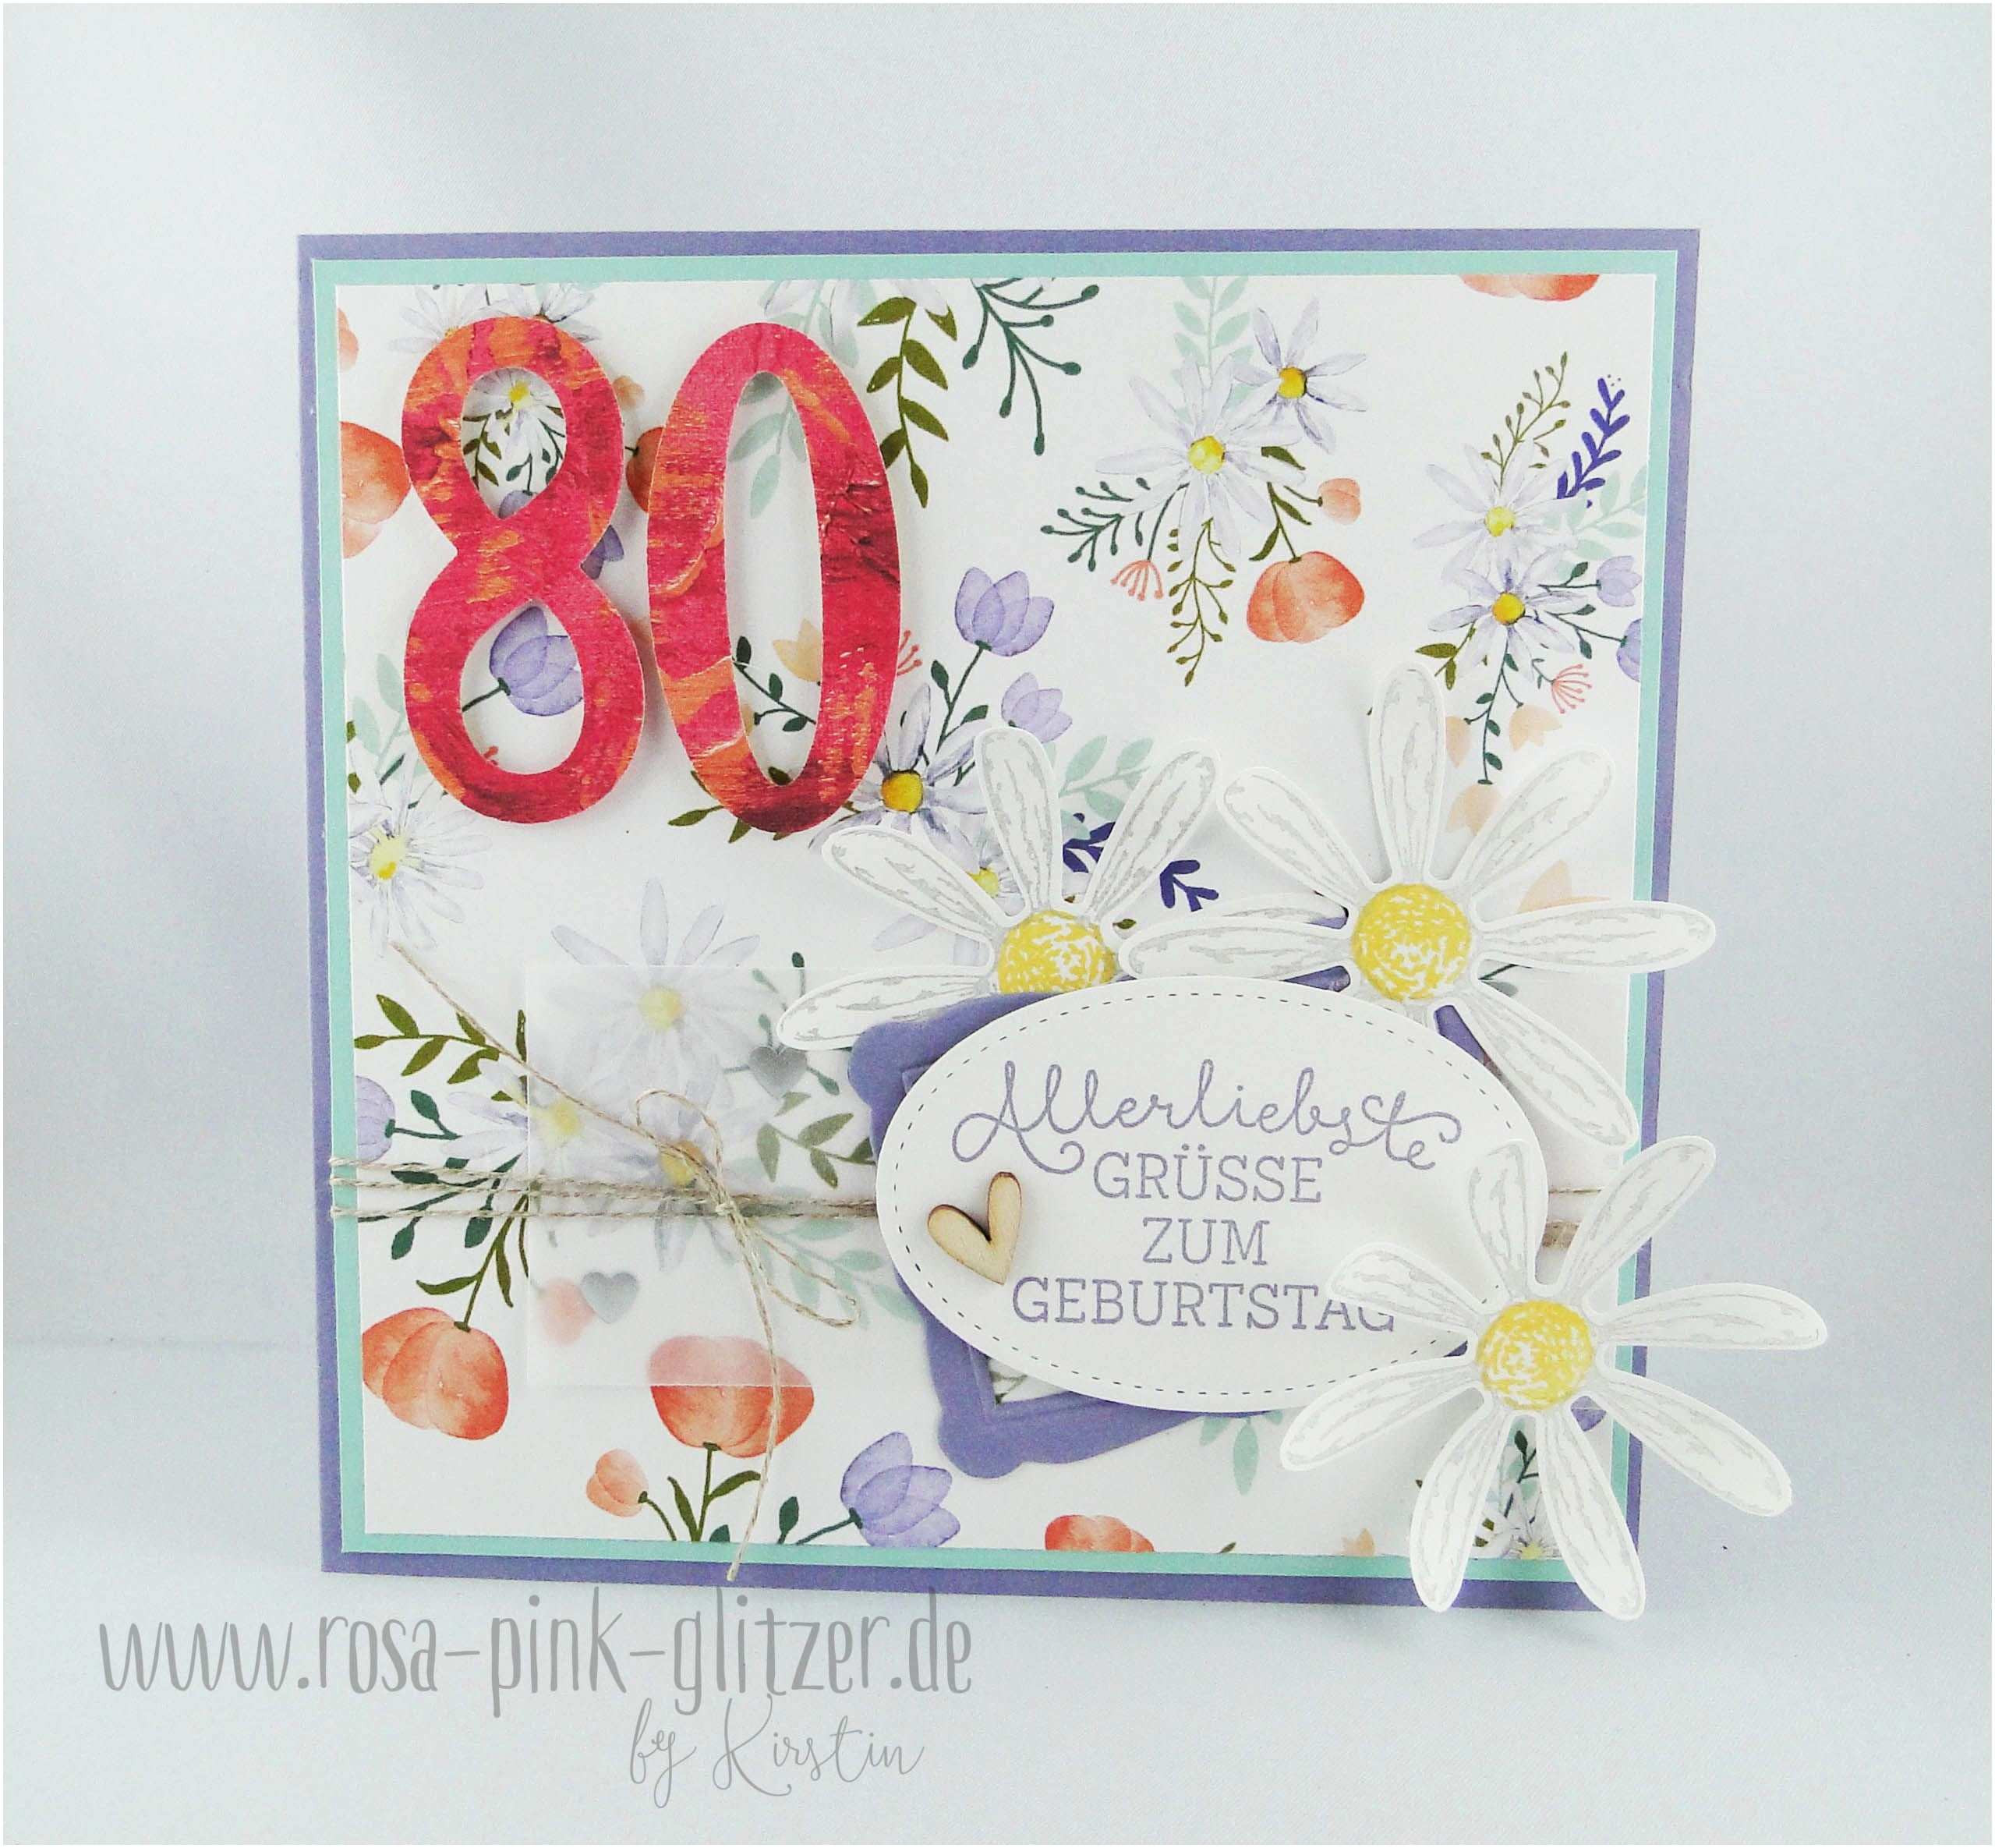 Geburtstagswünsche 80 Geburtstag
 Geburtstagswünsche Zum 80 Geburtstag Luxus